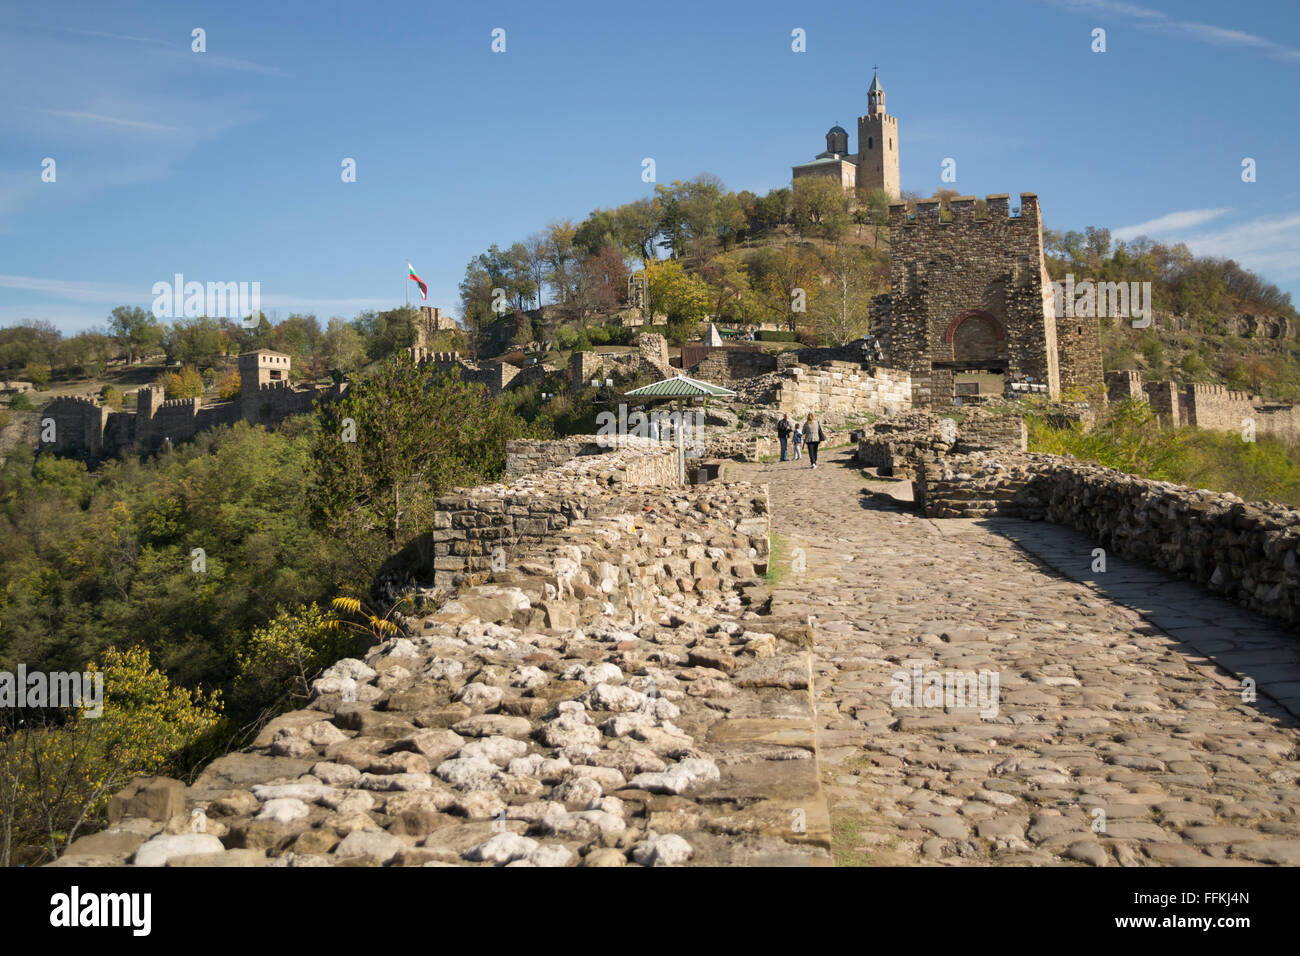 La ville médiévale de Tsaravets, Veliko Tarnovo montrant un passage d'entrée. Entouré sur trois côtés par des falaises escarpées. Banque D'Images